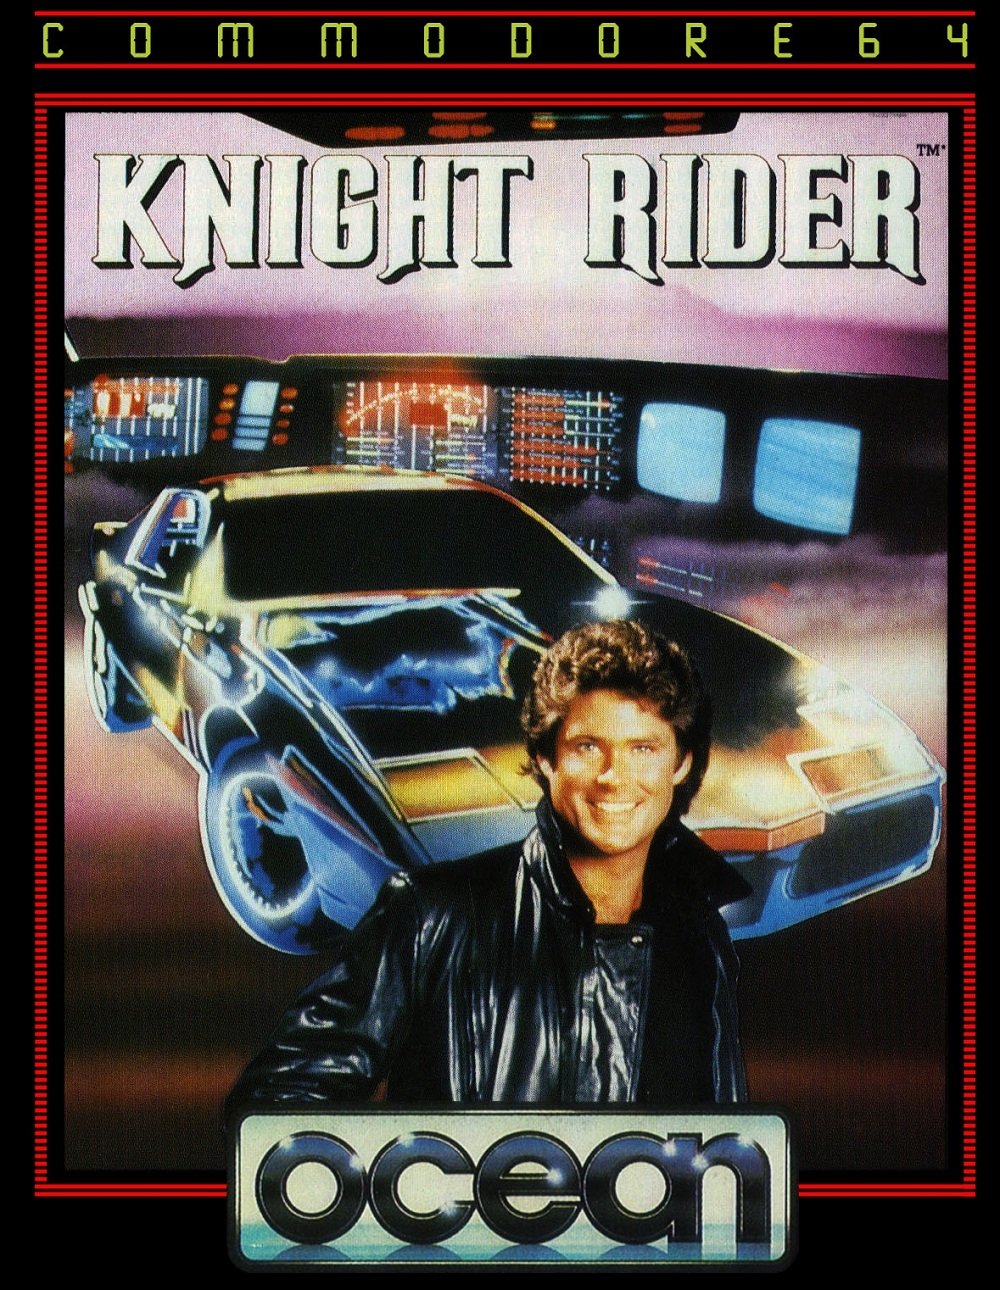 Image of Knight Rider